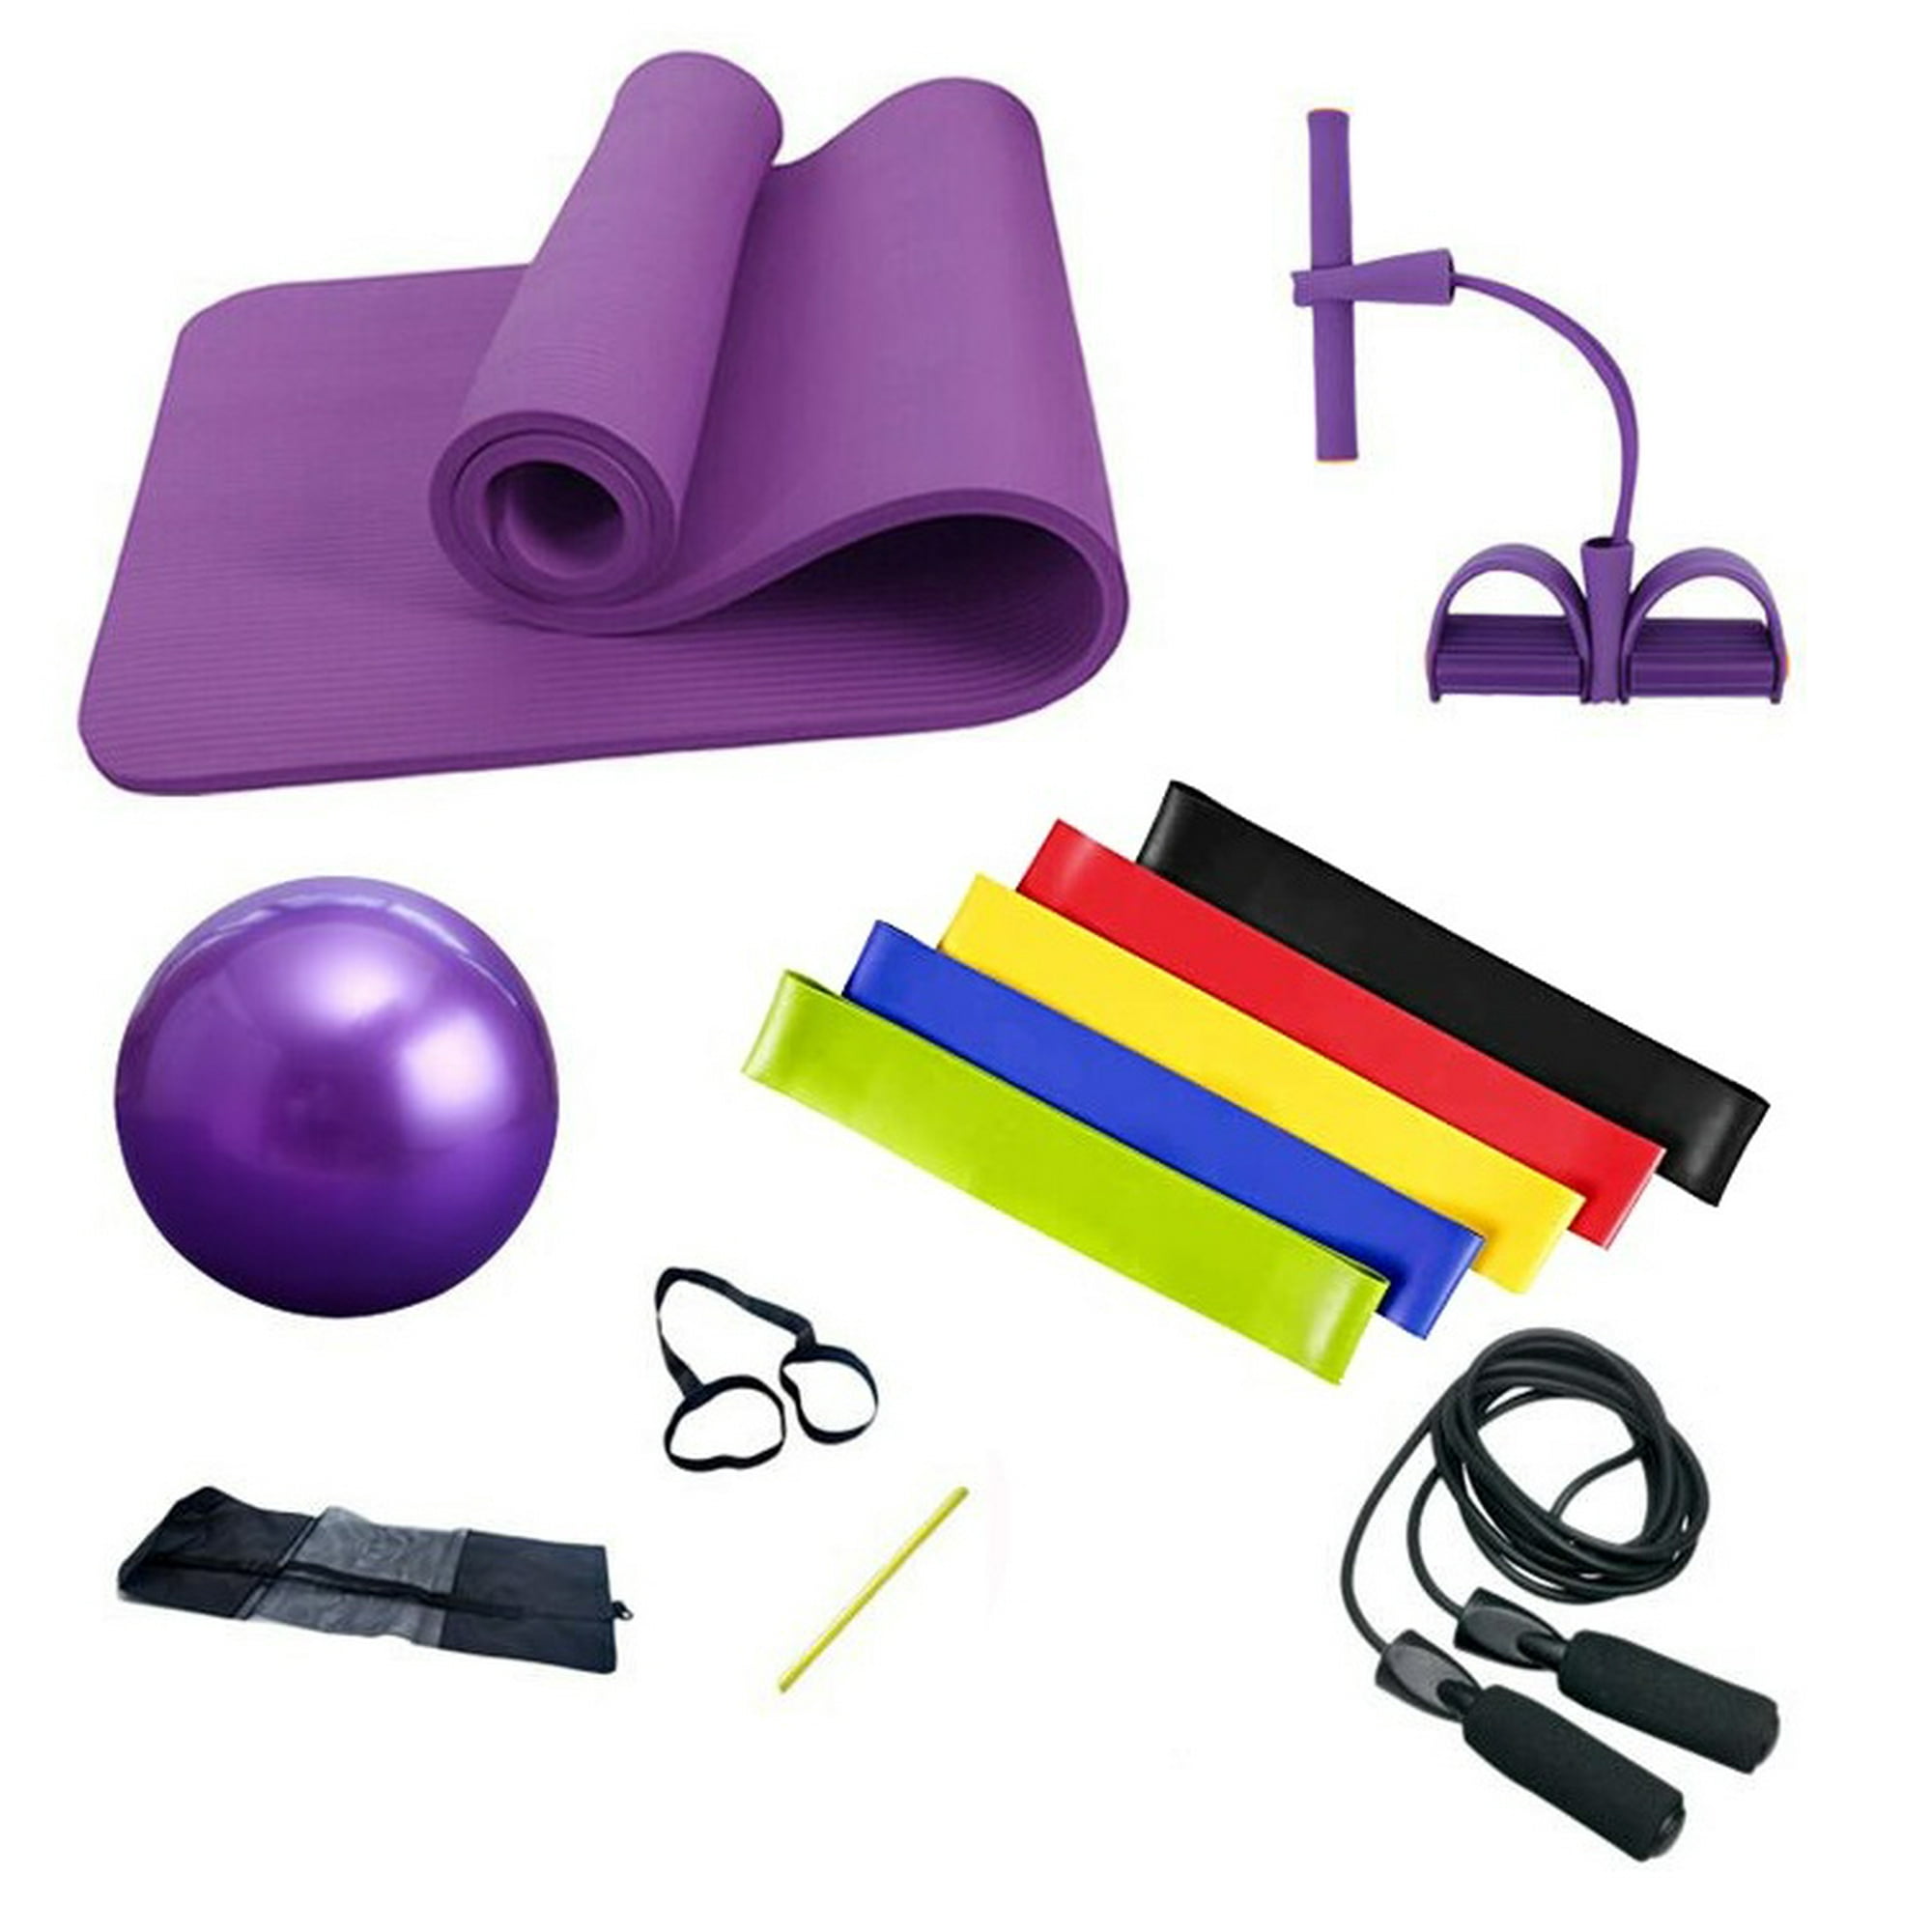  Kit de yoga 5 en 1, equipo de pilates para entrenamiento,  pelota de equilibrio para embarazo, esterilla de yoga, kit de entrenamiento  de cuerda de saltar para mujeres y accesorios ideales